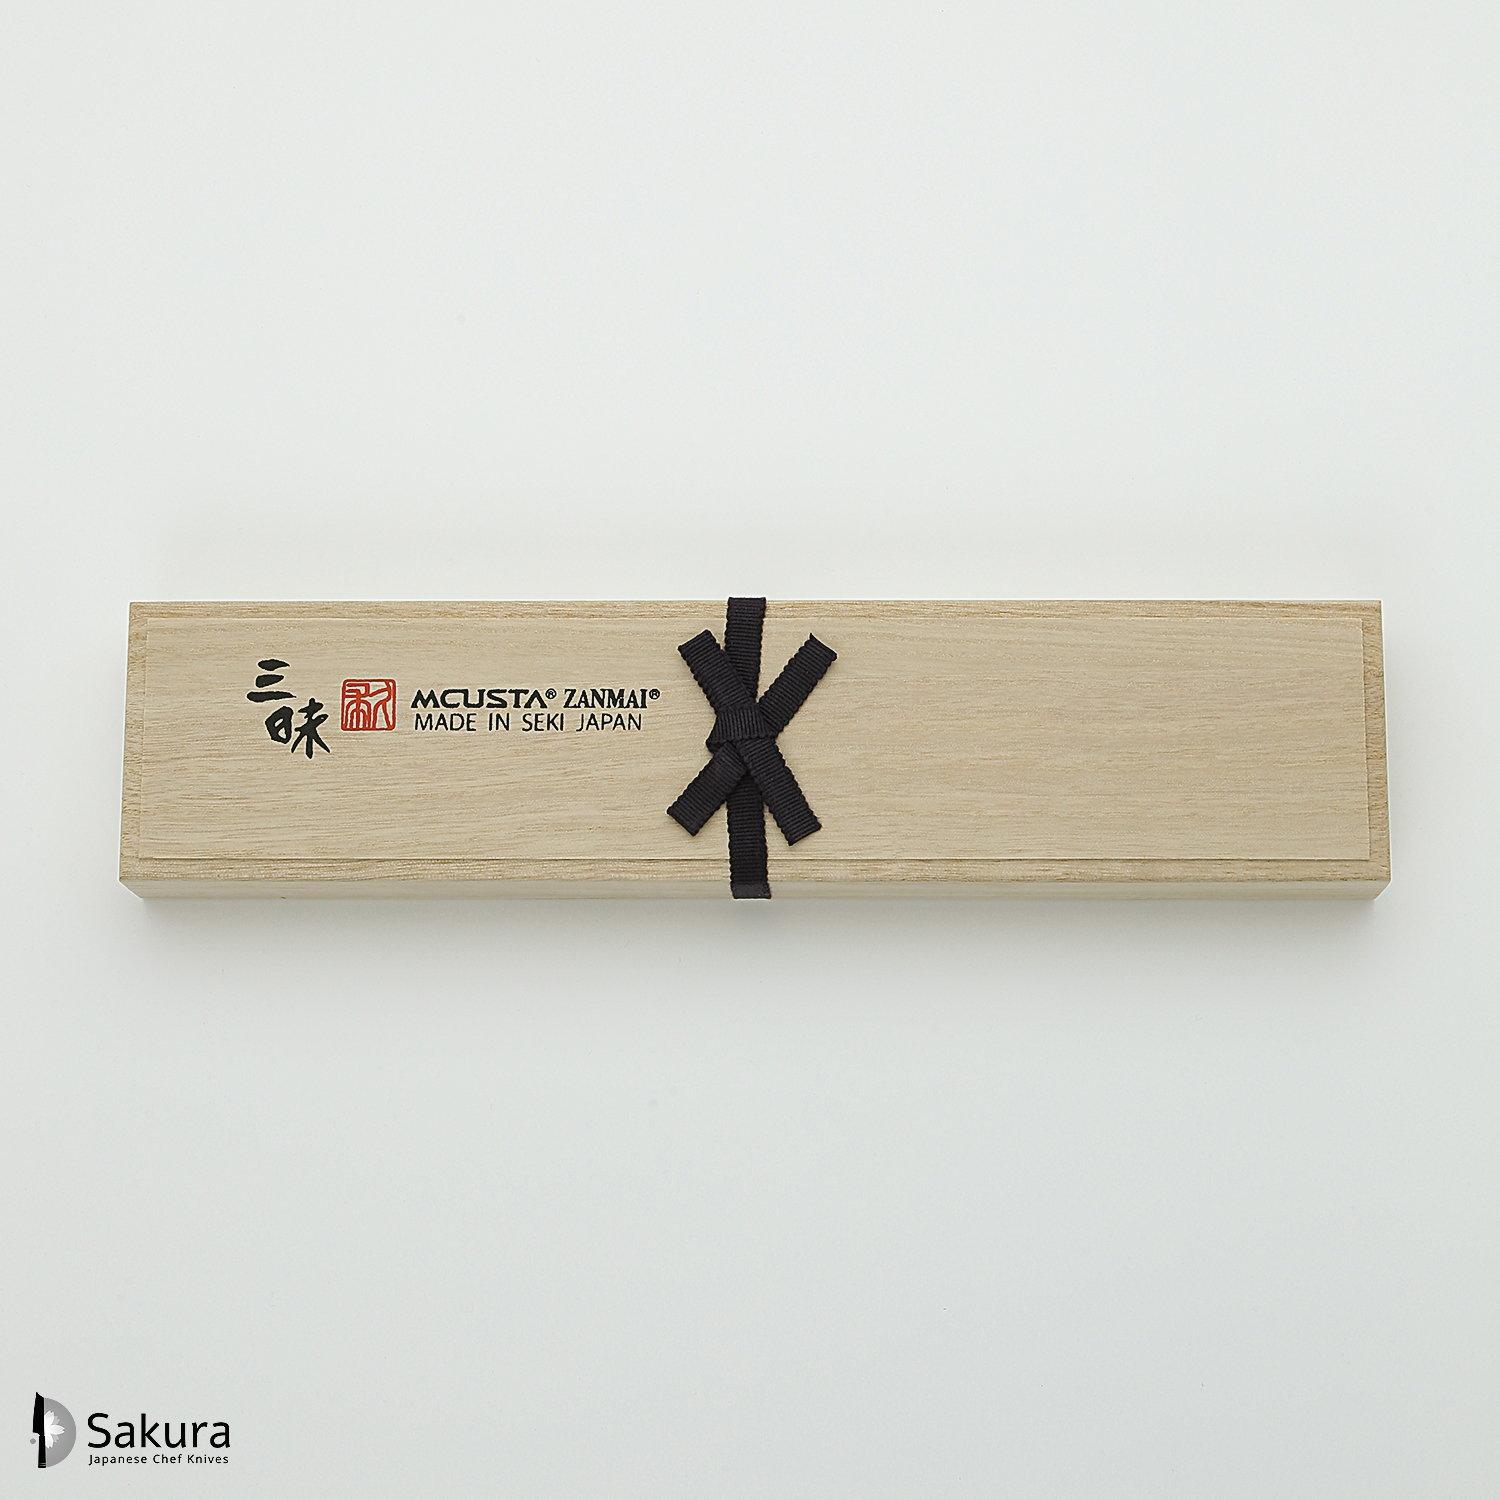 סכין רב-תכליתית בּוּנְקָה 180מ״מ מחושלת בעבודת יד 3 שכבות: פלדת פחמן יפנית מתקדמת מסוג Aogami Super עטופה פלדת אל-חלד גימור מט מלוטש מקוסטה זאנמאיי יפן ZBX-5016B